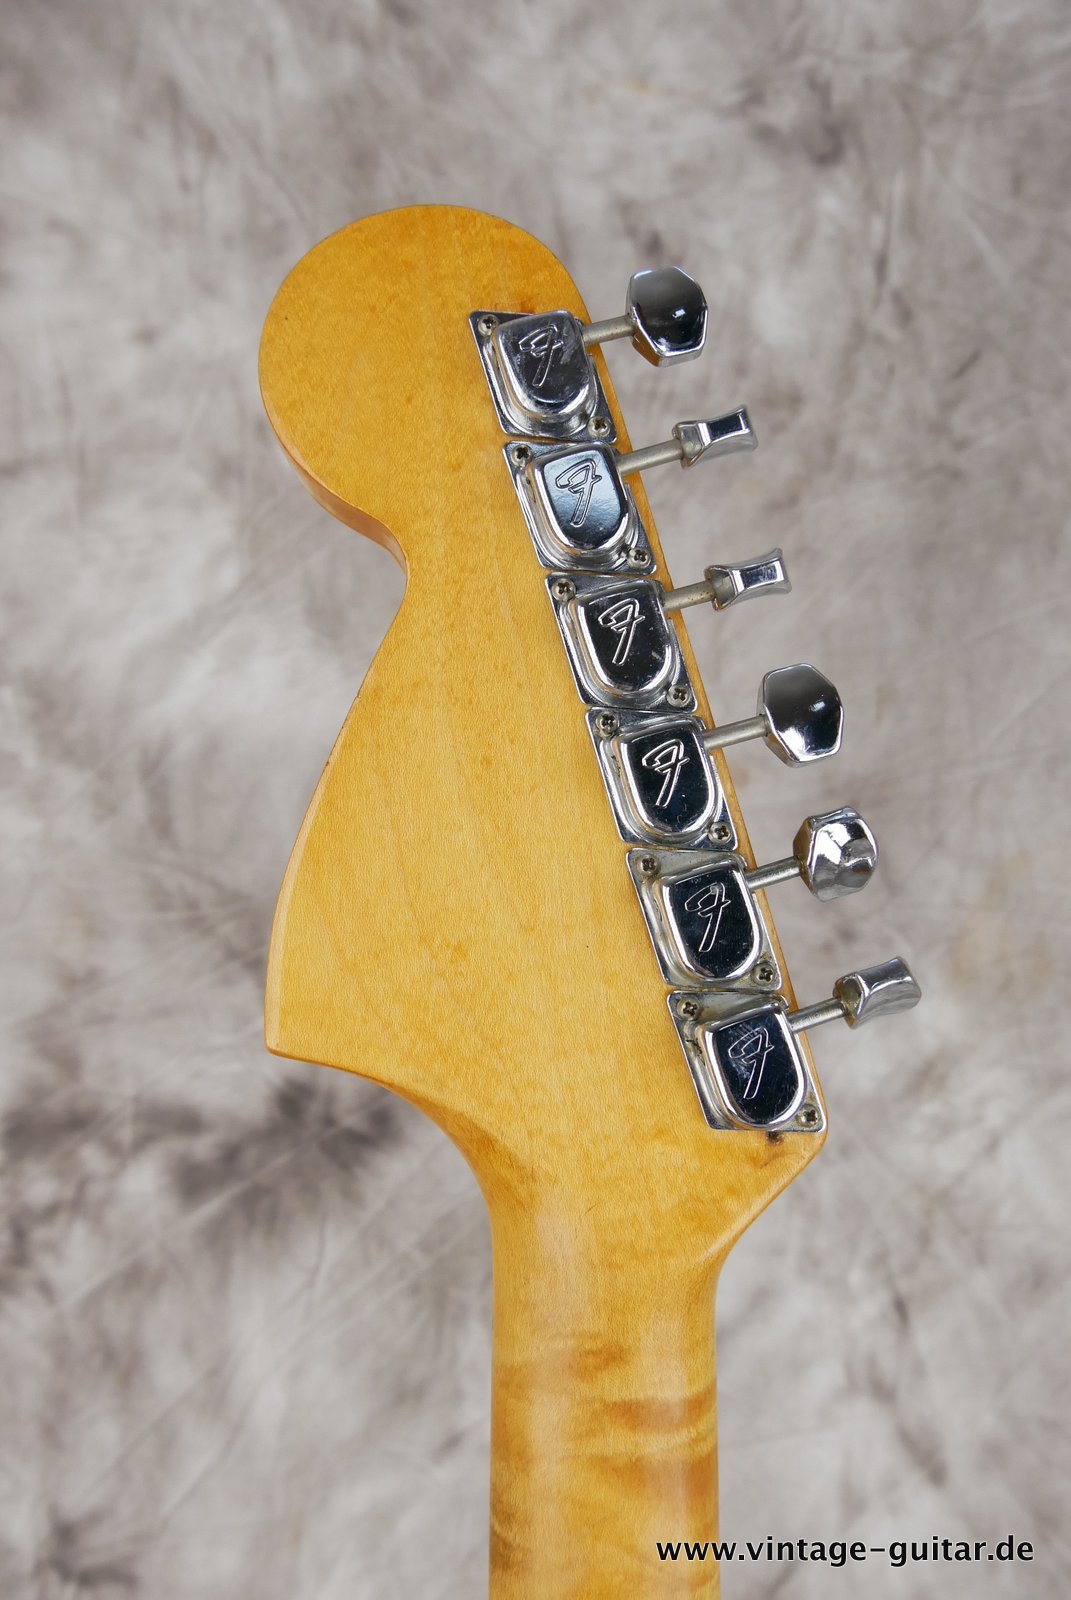 Fender-Stratocaster-1972-sunburst-4-hole-010.JPG